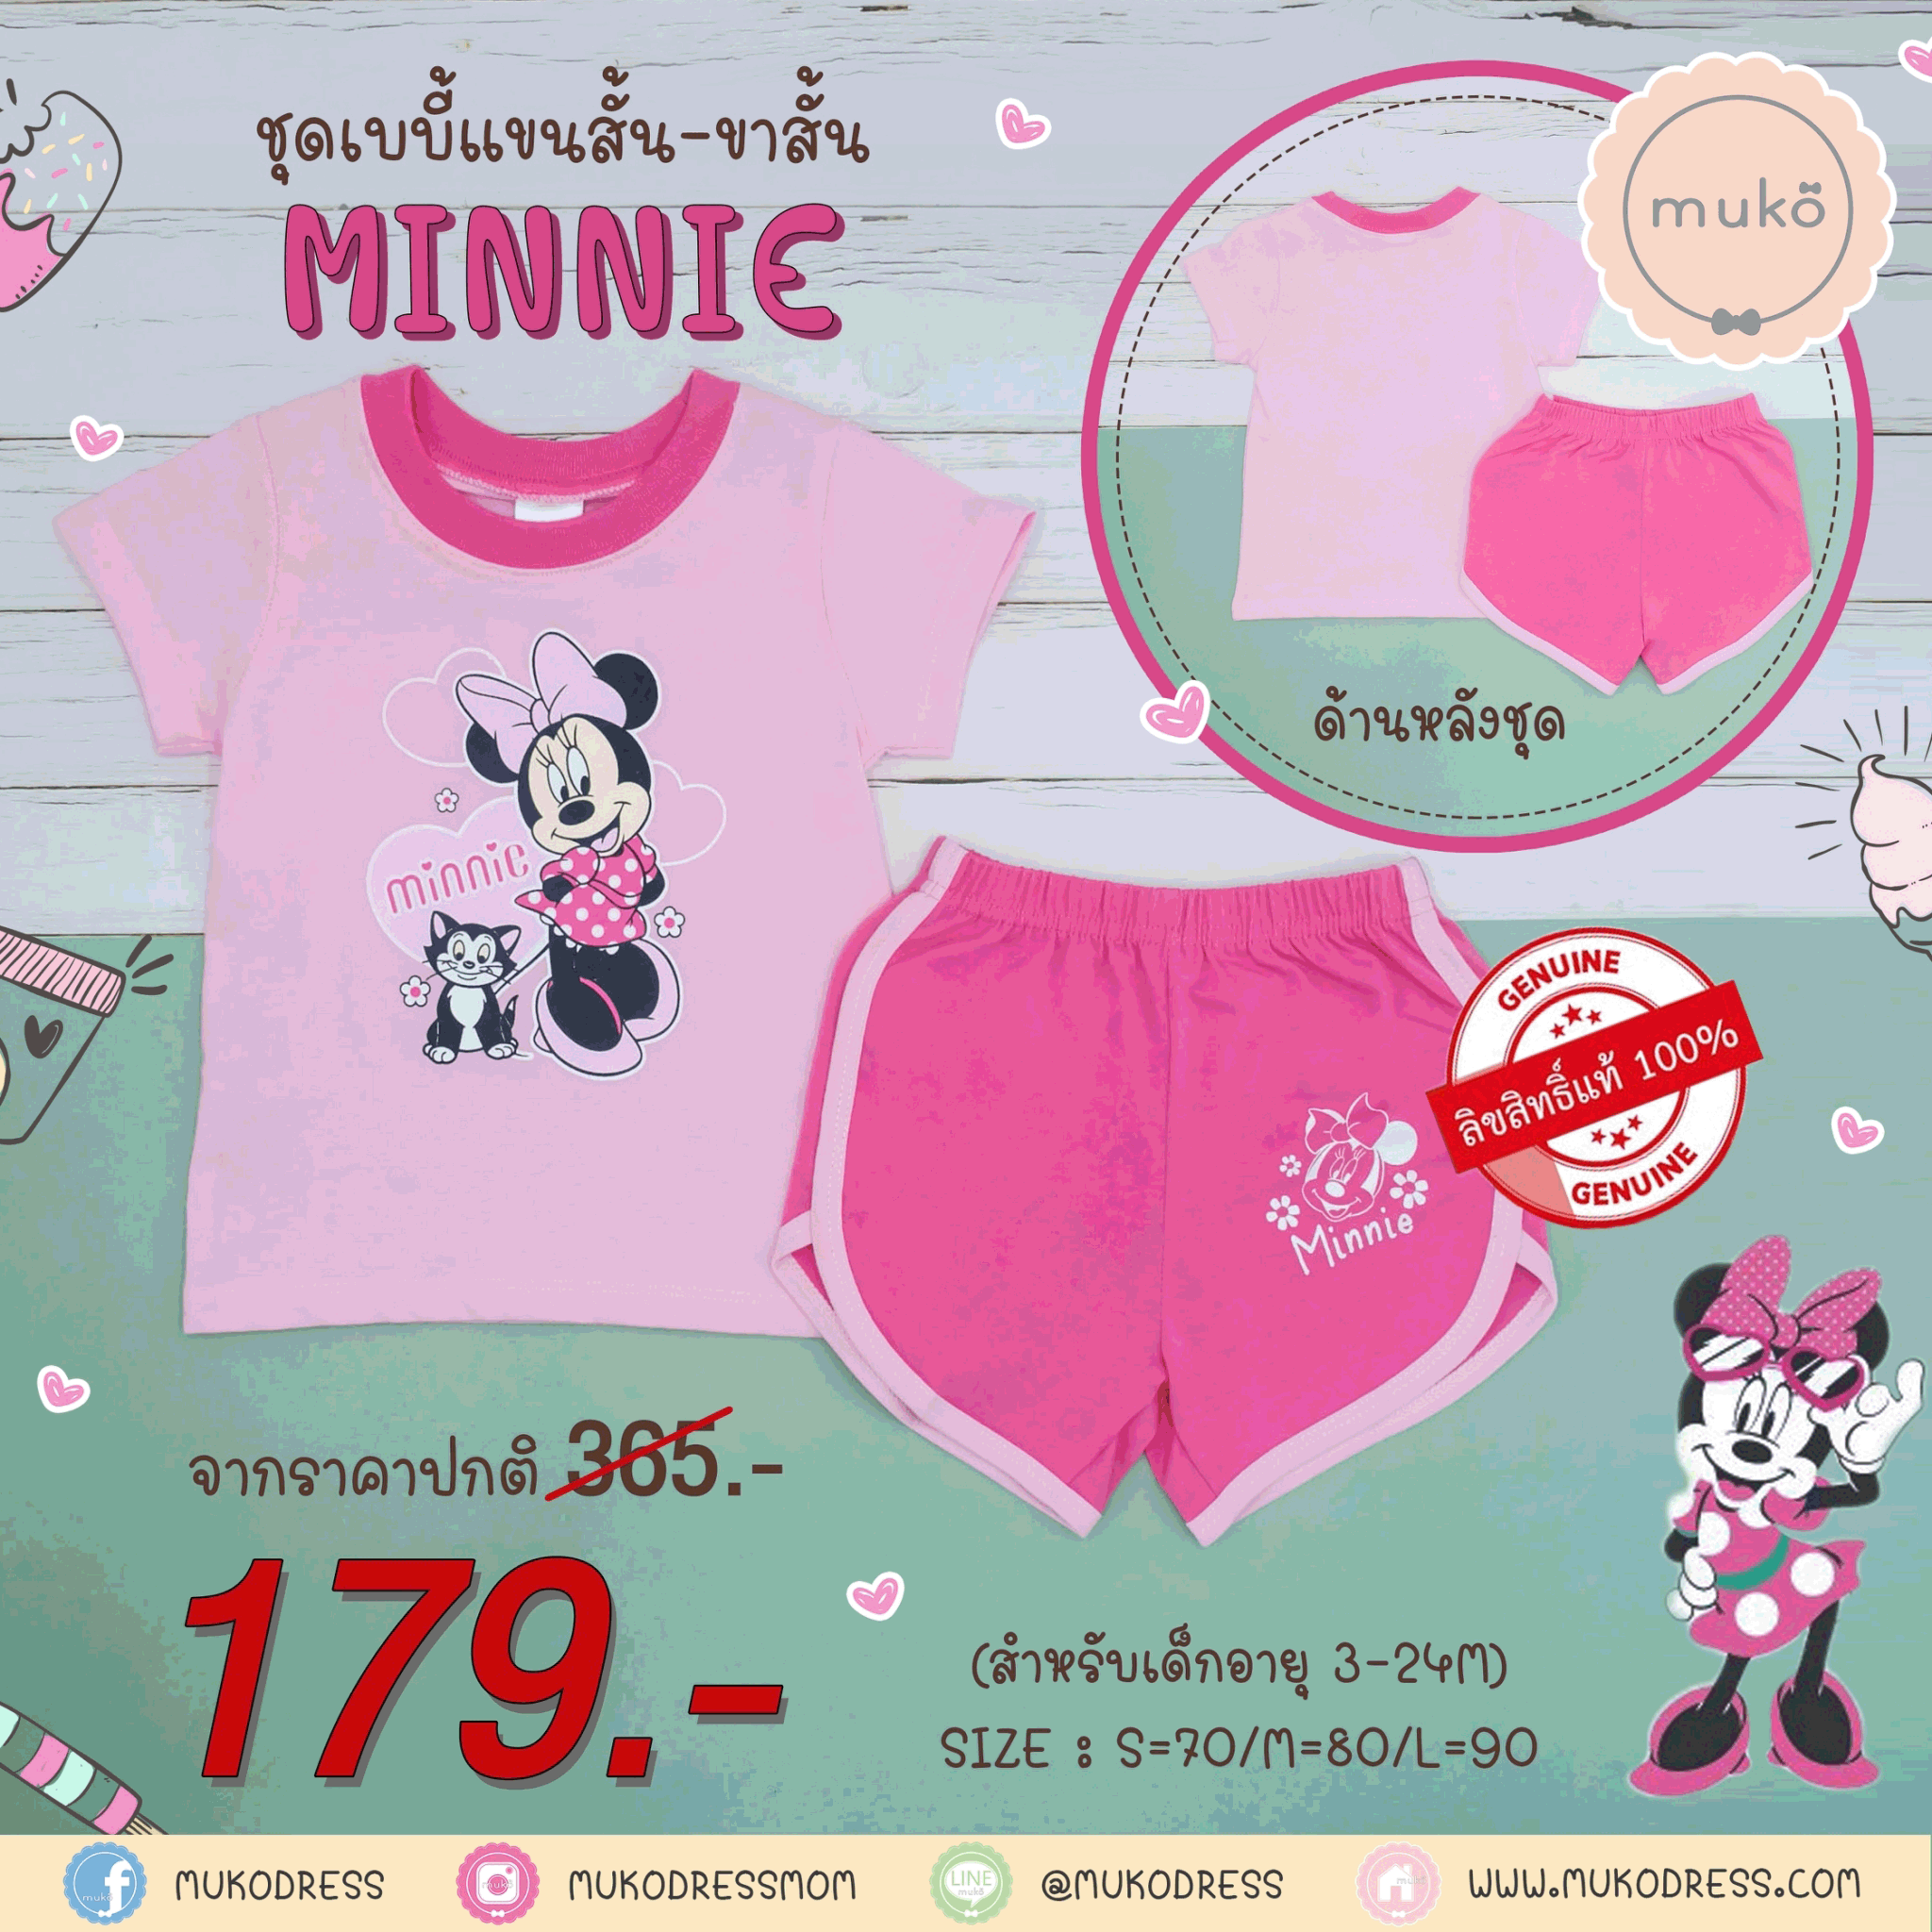 ชุดเบบี้ 6-12 เดือน แขนสั้น-ขาสั้น (M=80) DMK017-13-L-Pink M ลายมินนี่ เมาส์ Minnie Mouse